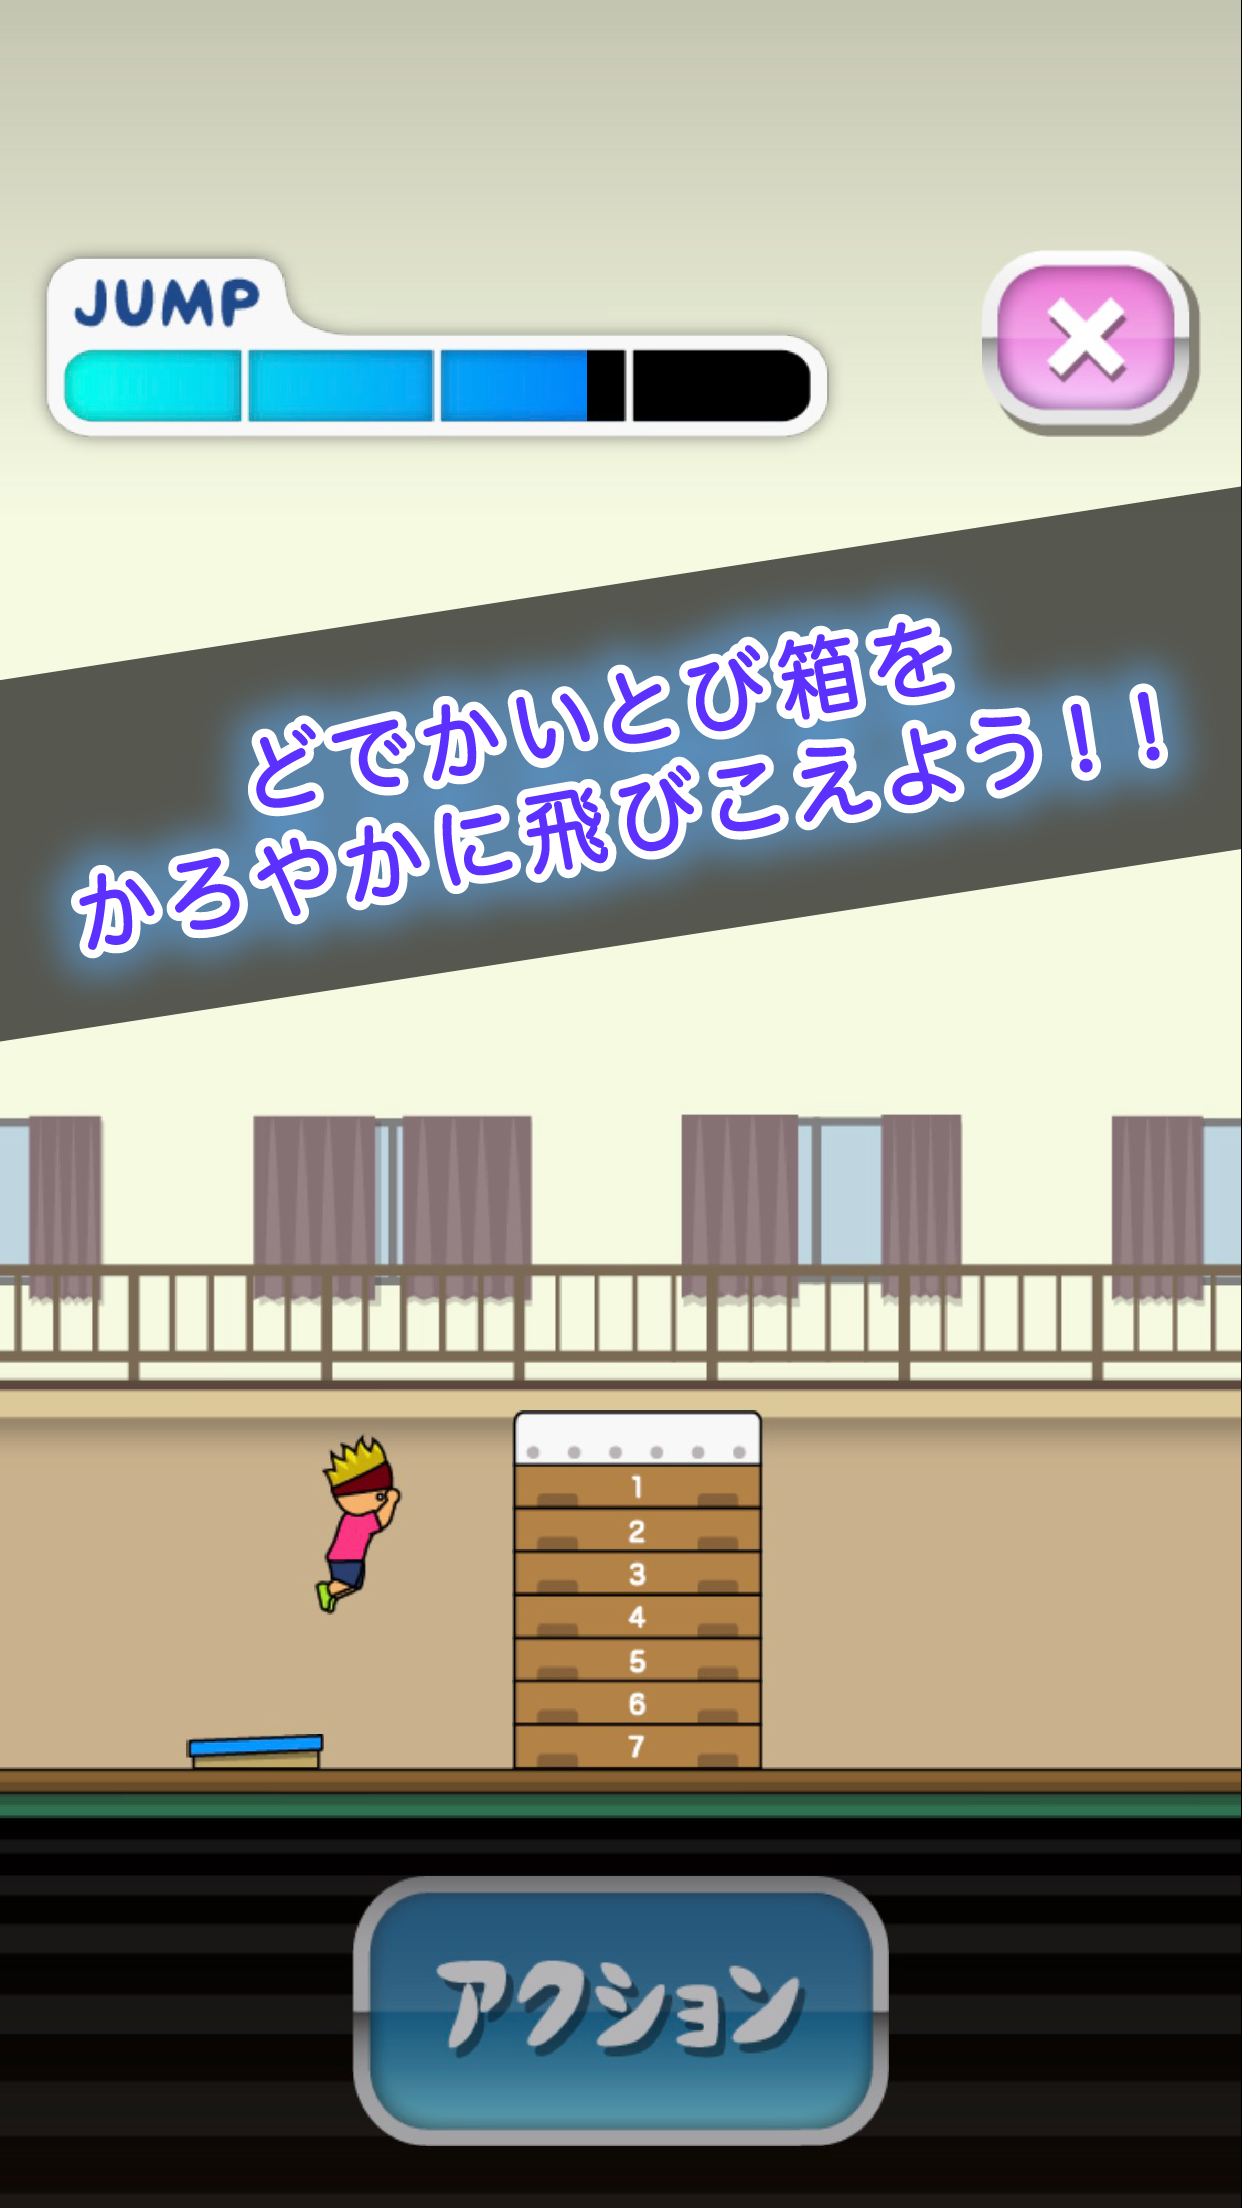 Screenshot 1 of Grand Prix Jump Box de Tony-kun 1.0